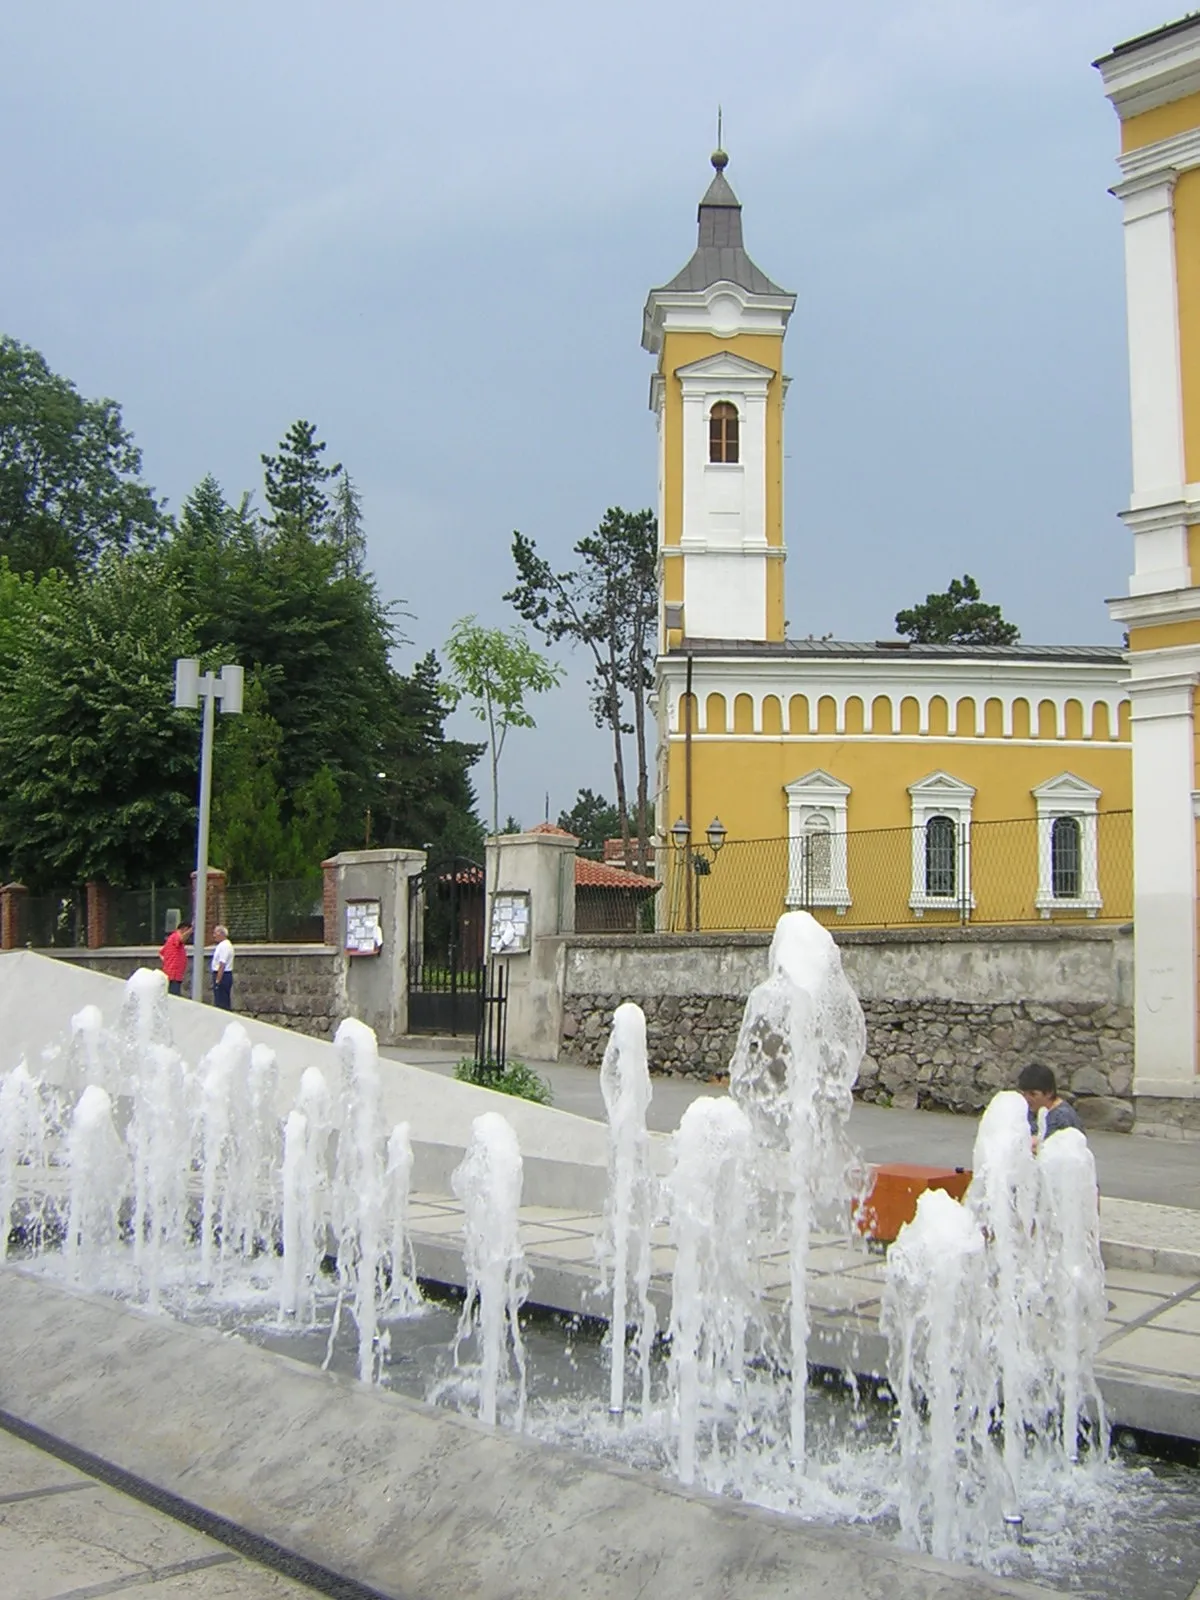 Image of Kraljevo